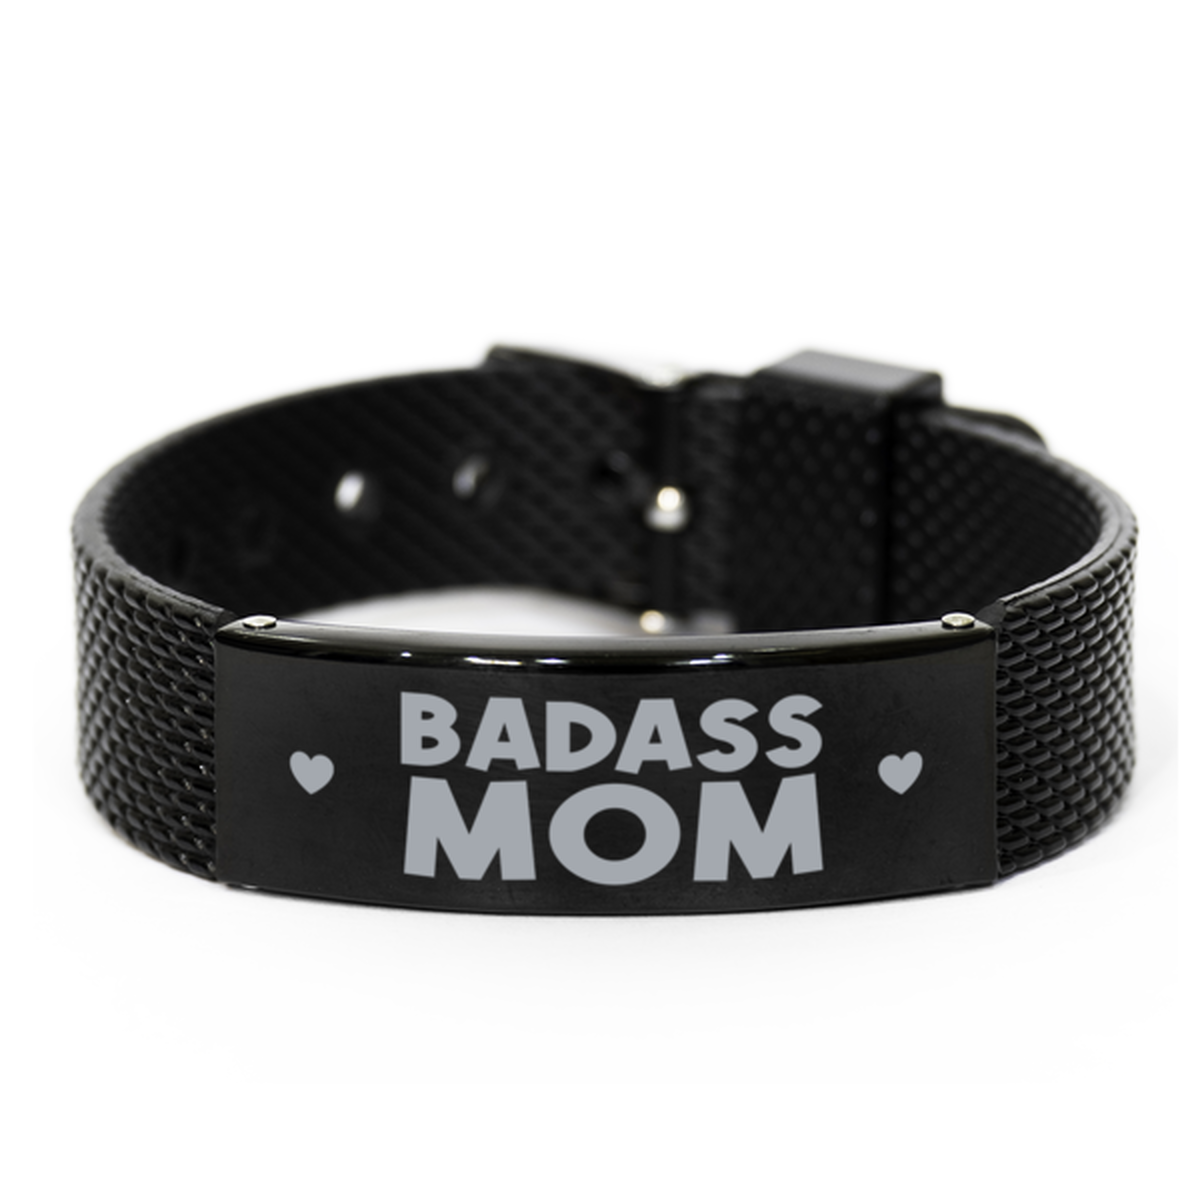 Mom Black Shark Mesh Bracelet, Badass Mom, Funny Family Gifts For Mom From Son Daughter